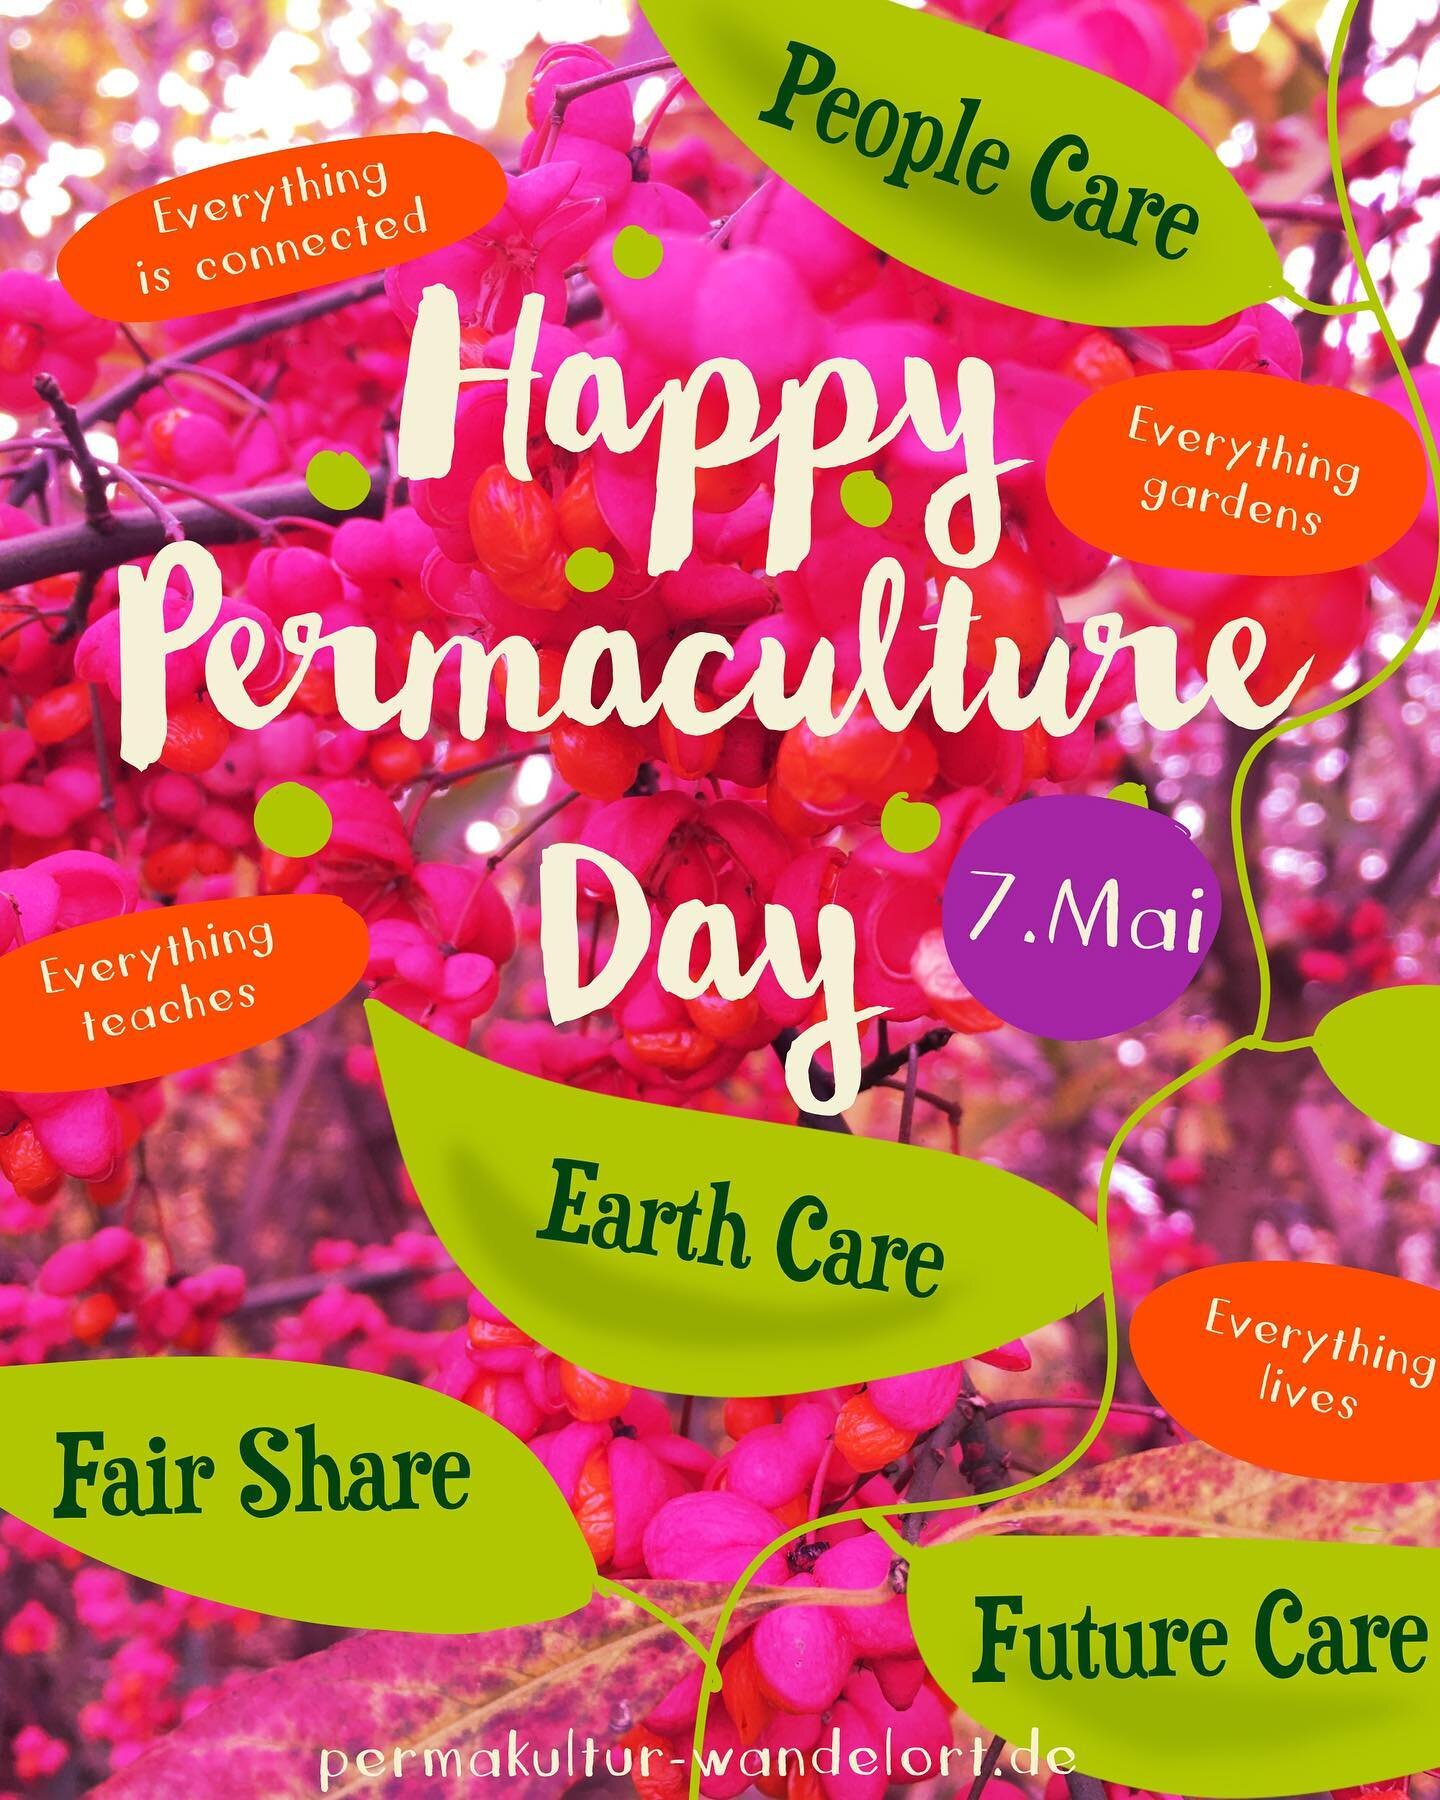 🇬🇧⬇️

Heute ist der Internationale Tag der Permakultur. 🌱🌸🥦 Eine wunderbare Gelegenheit, die Permakultur zu feiern. Das bedeutet f&uuml;r uns auch eine gro&szlig;e ❤️ Dankbarkeit ❤️zu sp&uuml;ren gegen&uuml;ber Indigenen ind Kleinb&auml;uer*inne